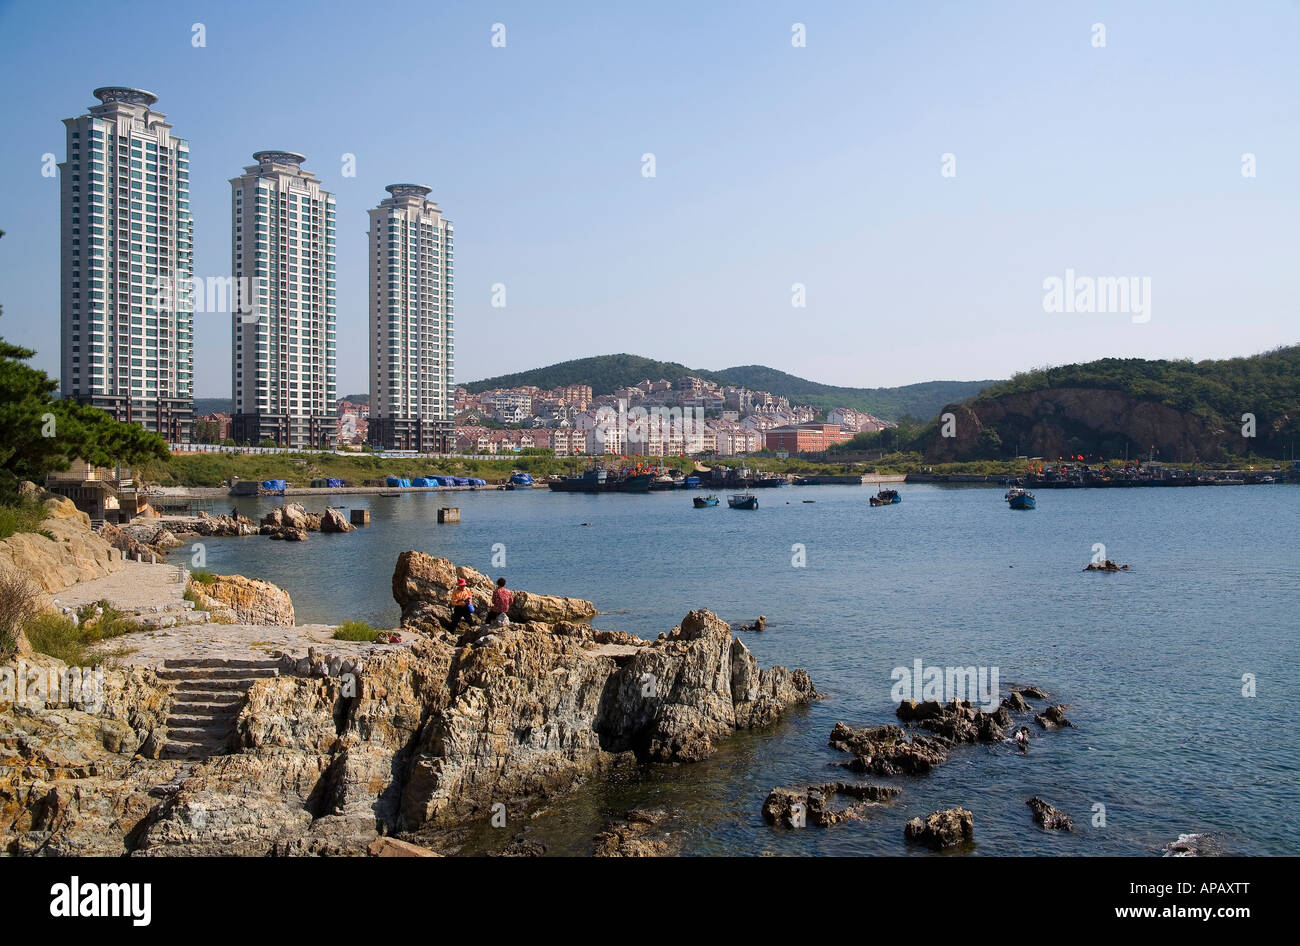 The City of Dalian Stock Photo